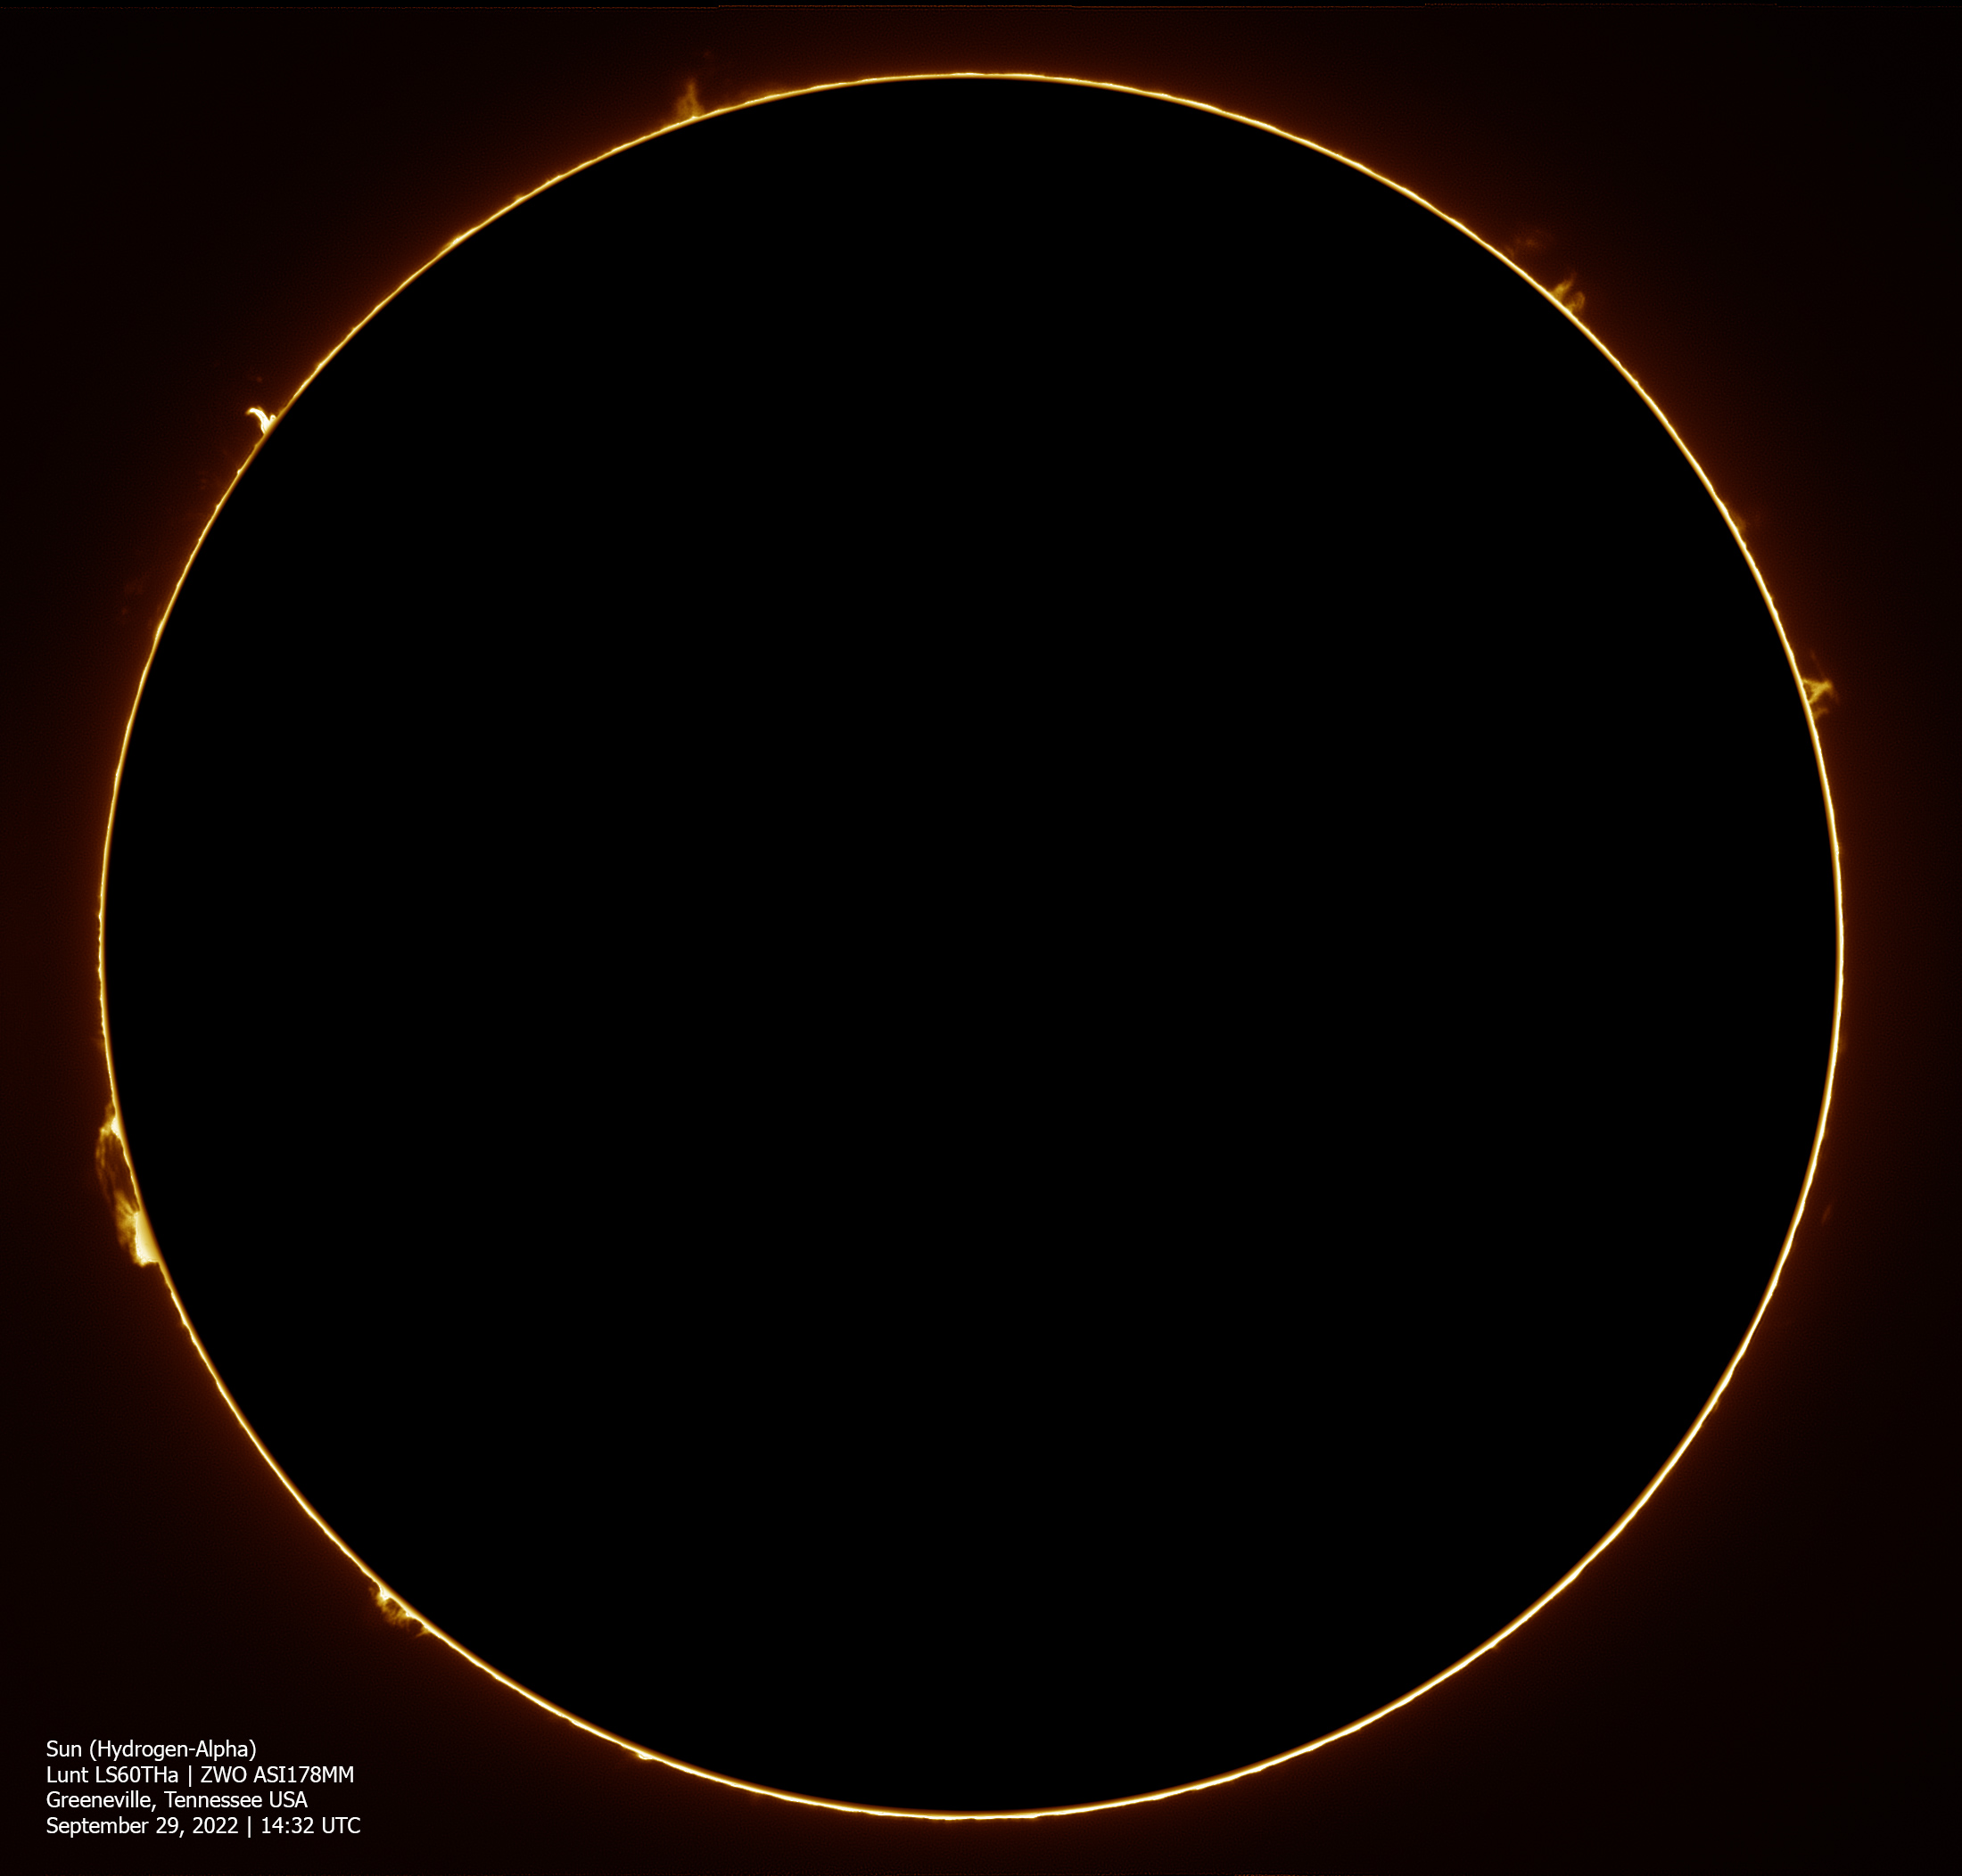 Sun-ZWO178-Lunt60-Full-Disk-Ha-Blackout-September-29-2022.jpg